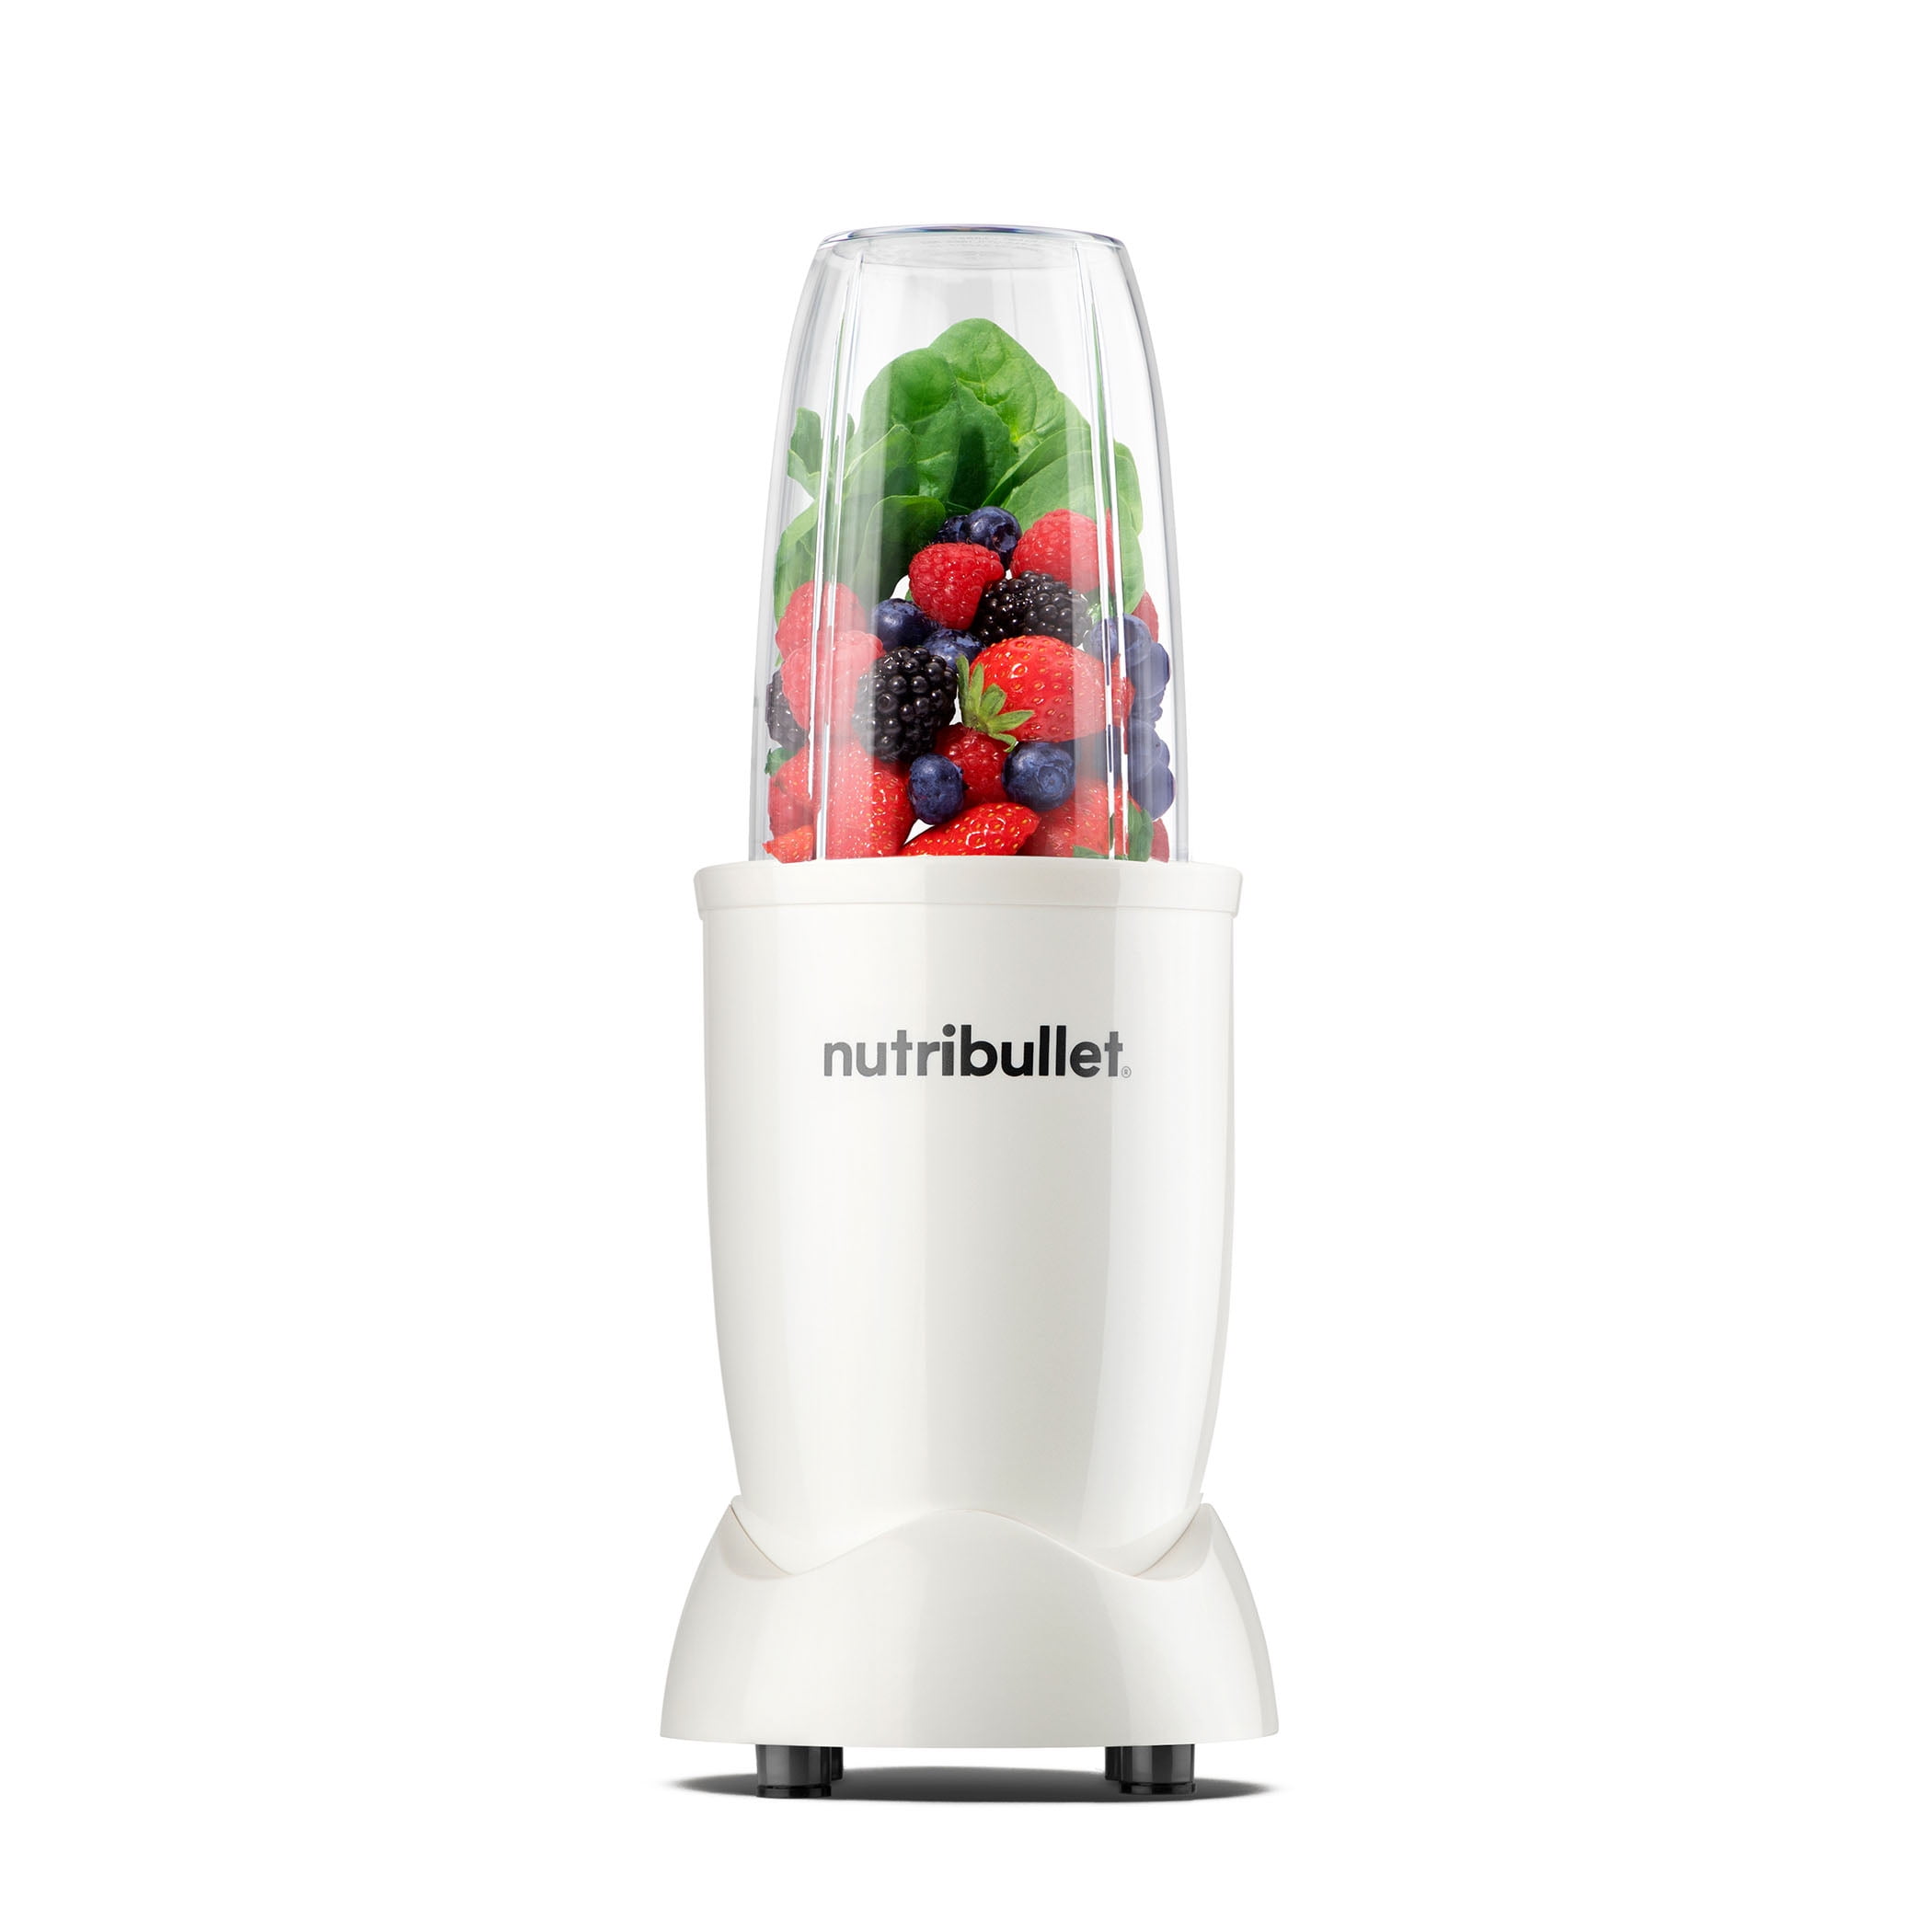 nutribullet Pro 900 Watt Personal Blender - Matte White - Shop